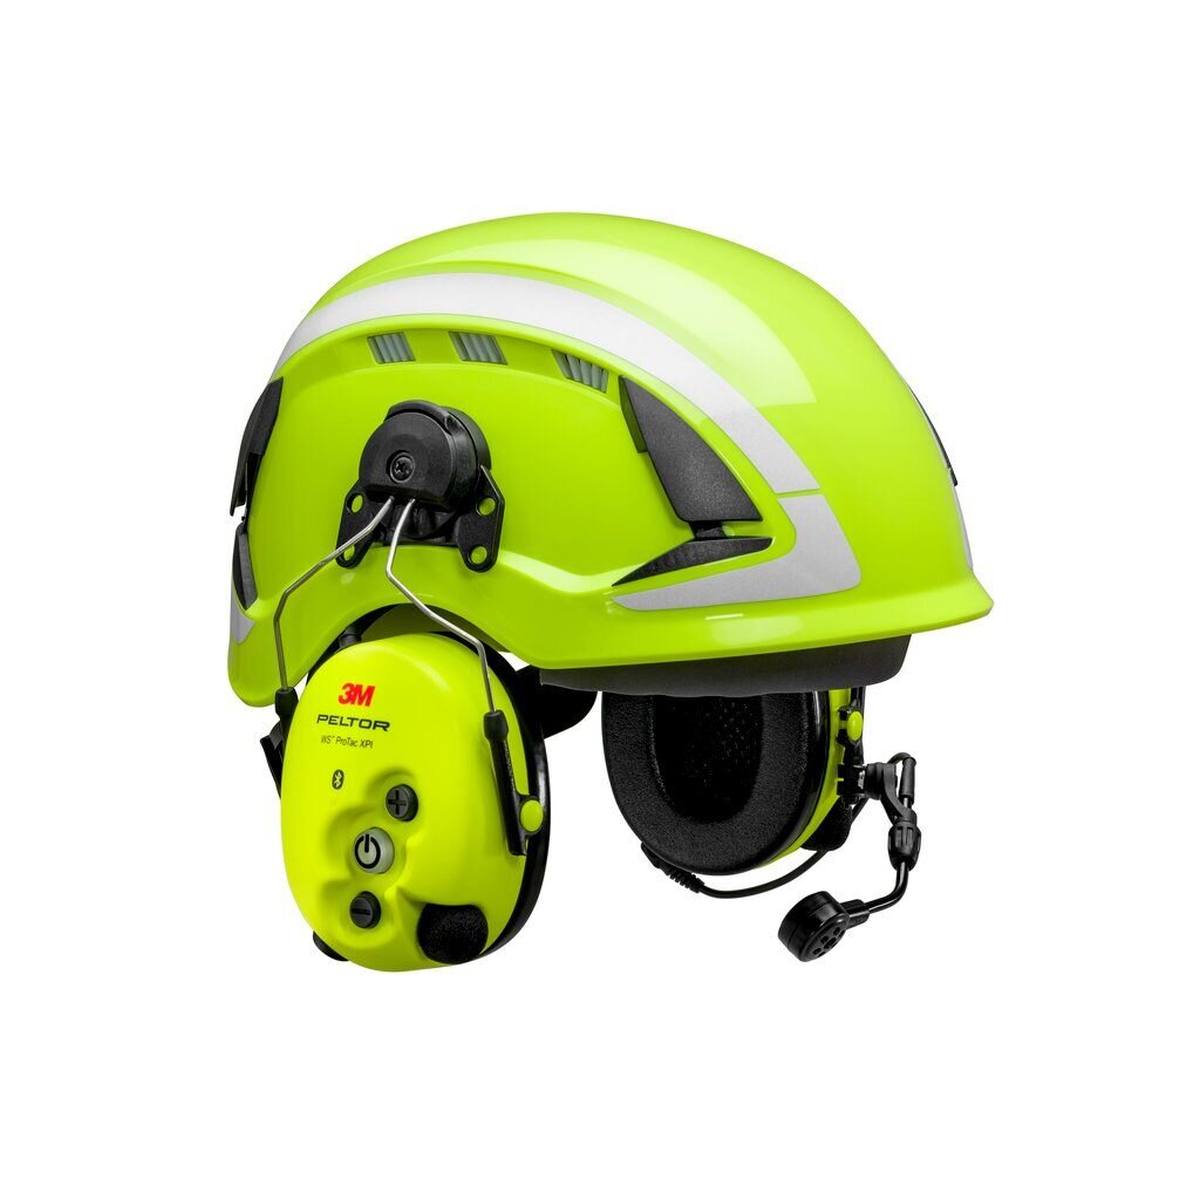 3M Peltor WS ProTac XPI Gehörschutz-Headset, Helmbefestigung, Bluetooth, gelb, MT15H7P3EWS6